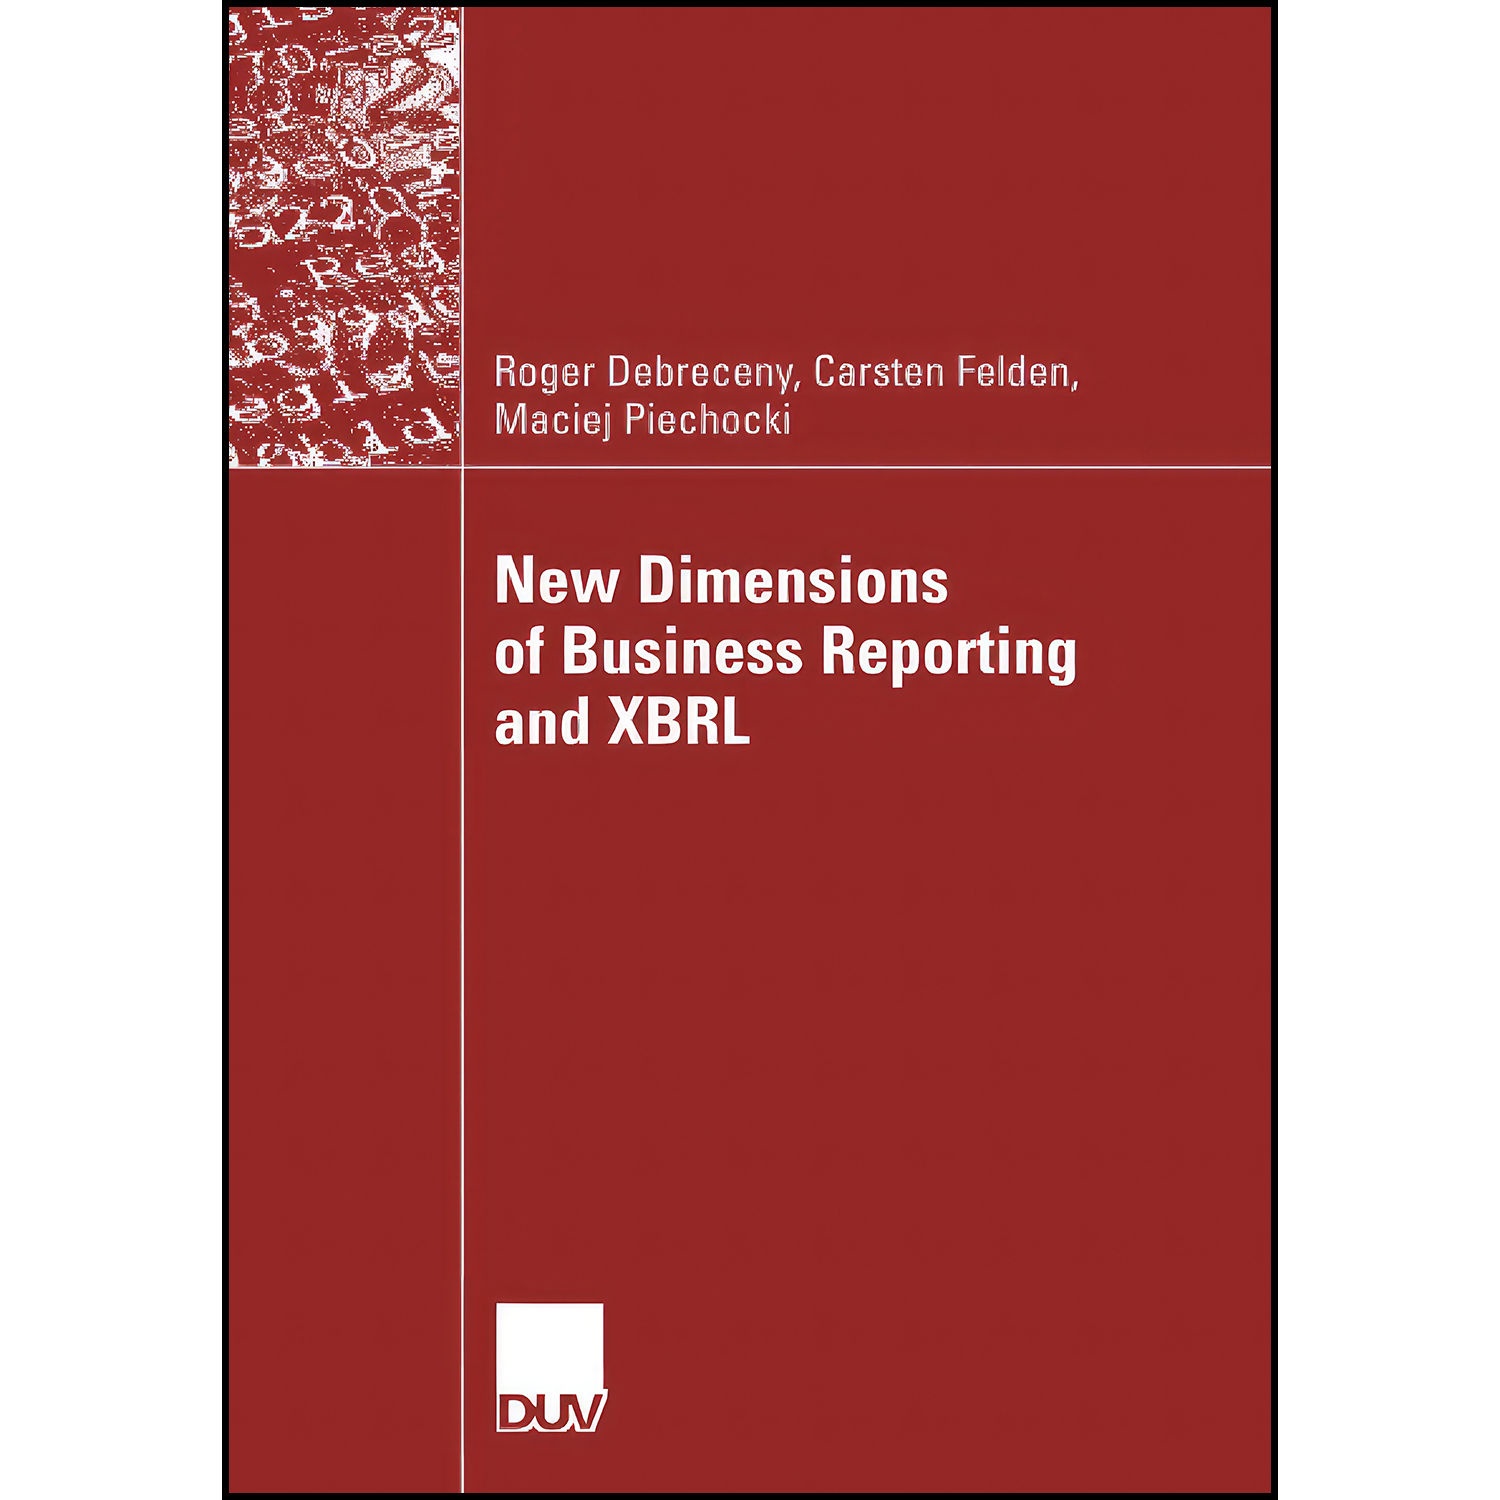 کتاب New Dimensions of Business Reporting and XBRL اثر جمعي از نويسندگان انتشارات بله